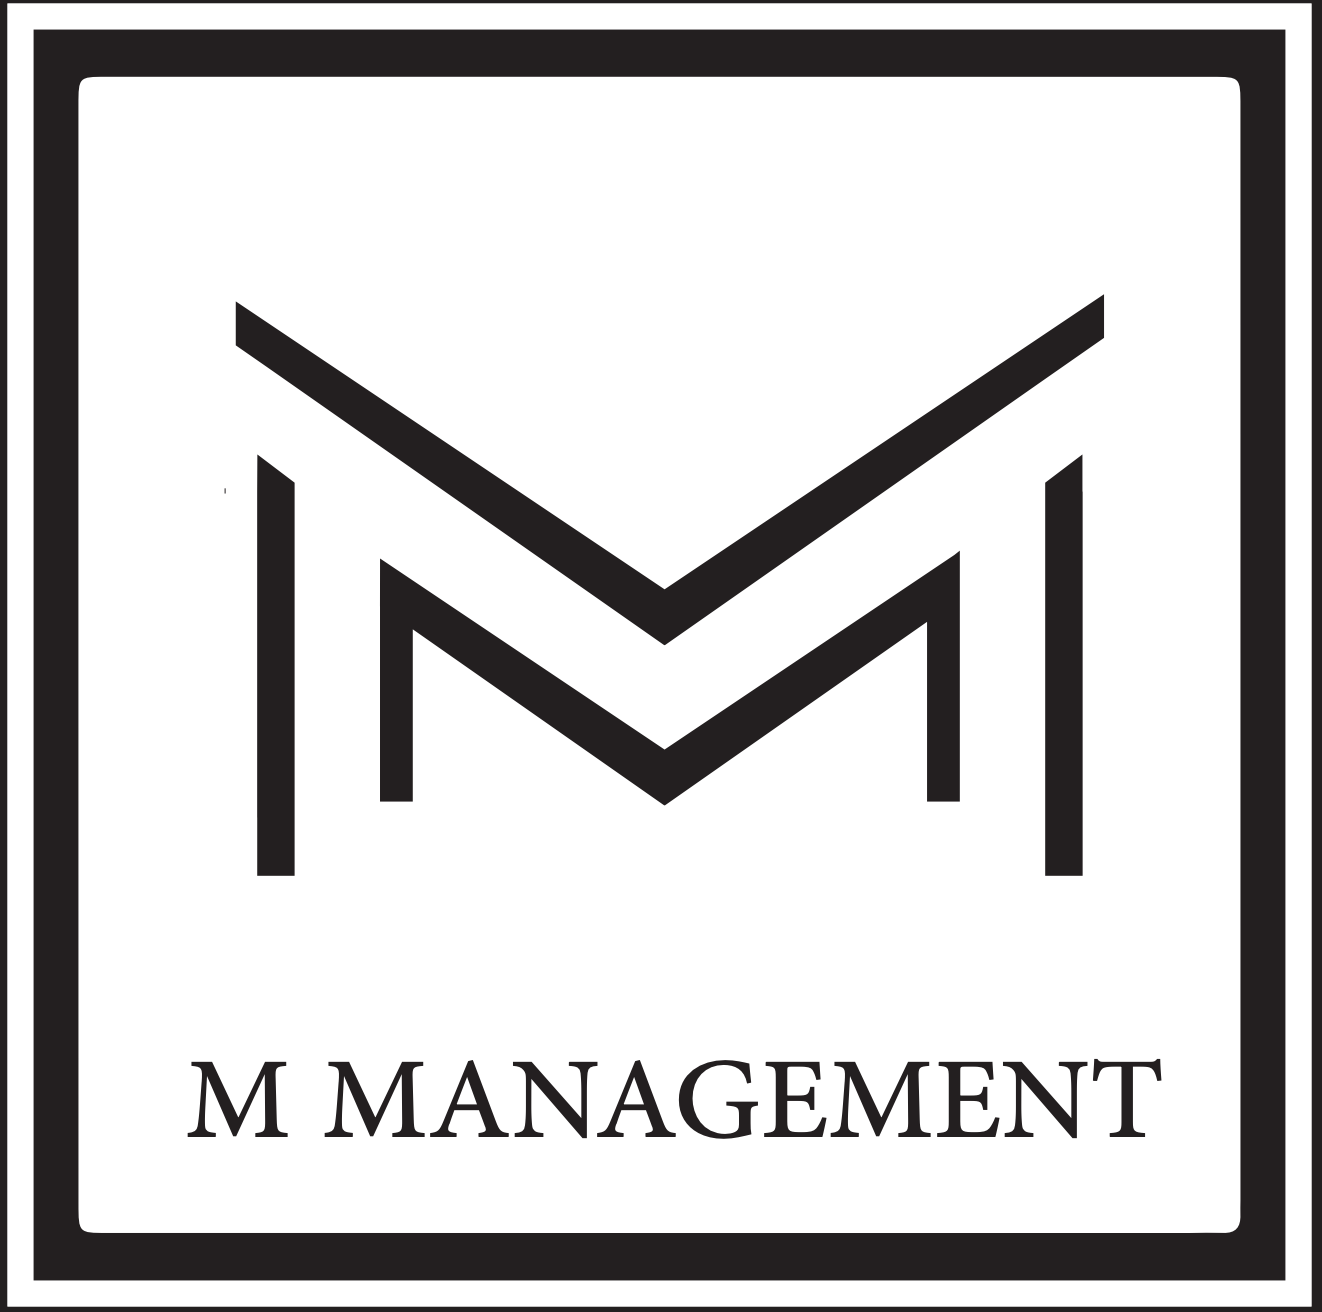 About M Management